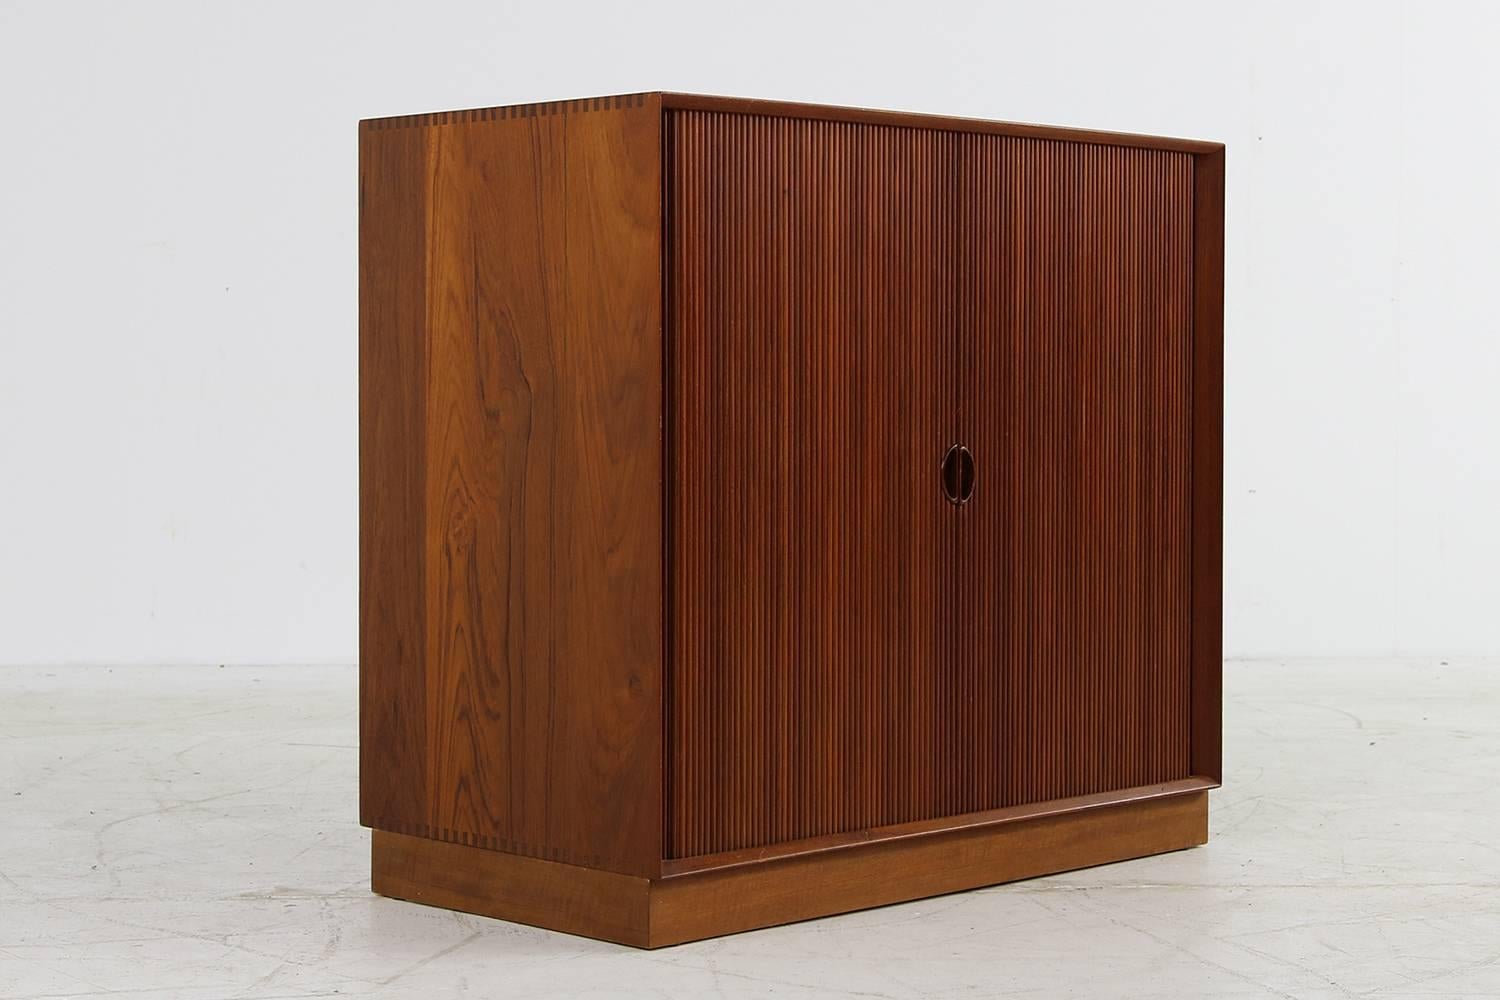 1960s Peter Hvidt Teak Cabinet with Tambour Doors Danish Modern Design Sideboard 4